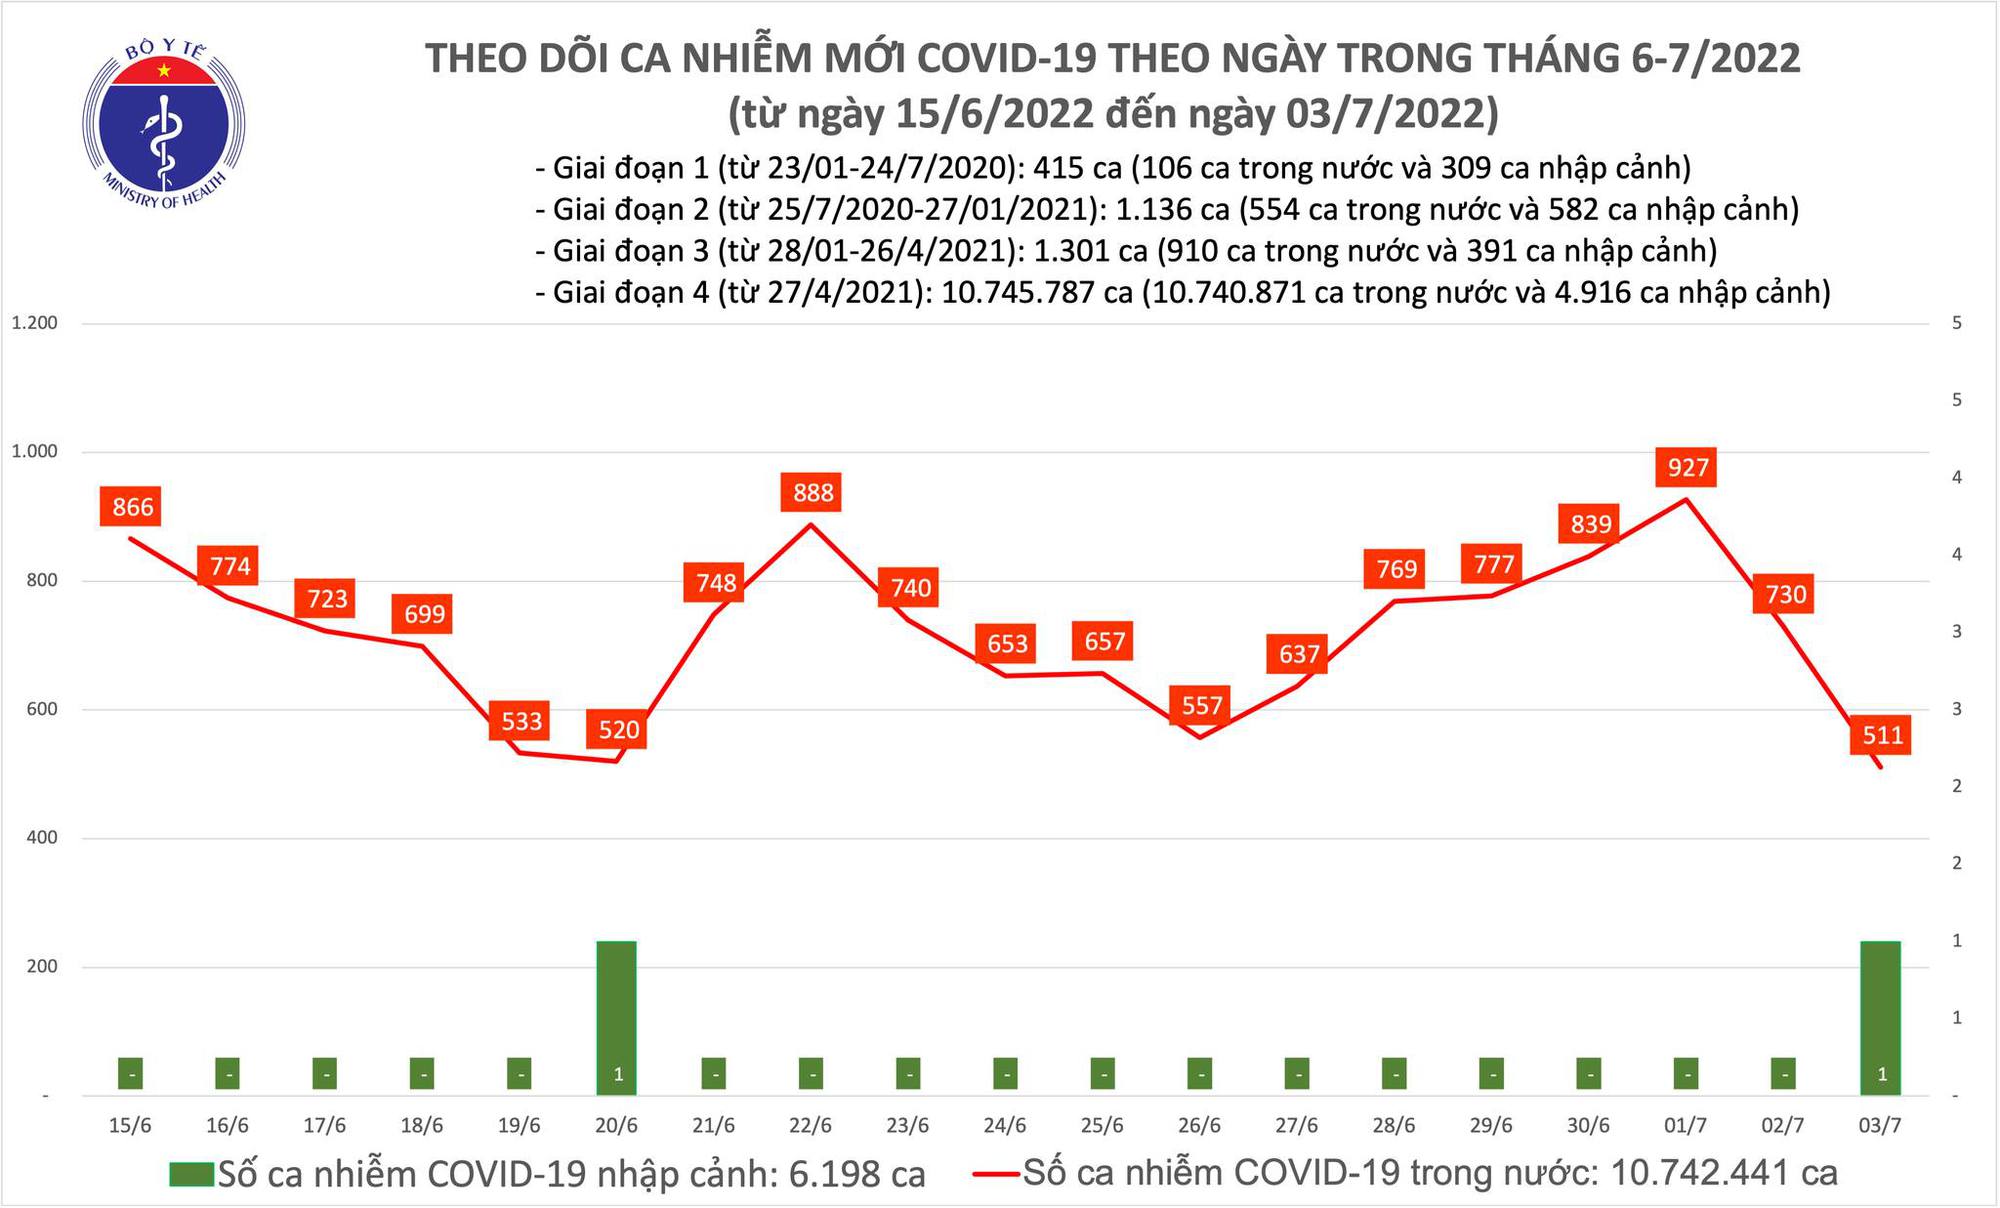 Ngày 3/7: Ca mắc COVID-19 giảm mạnh còn 511, thấp nhất trong 12 tháng qua - Ảnh 1.